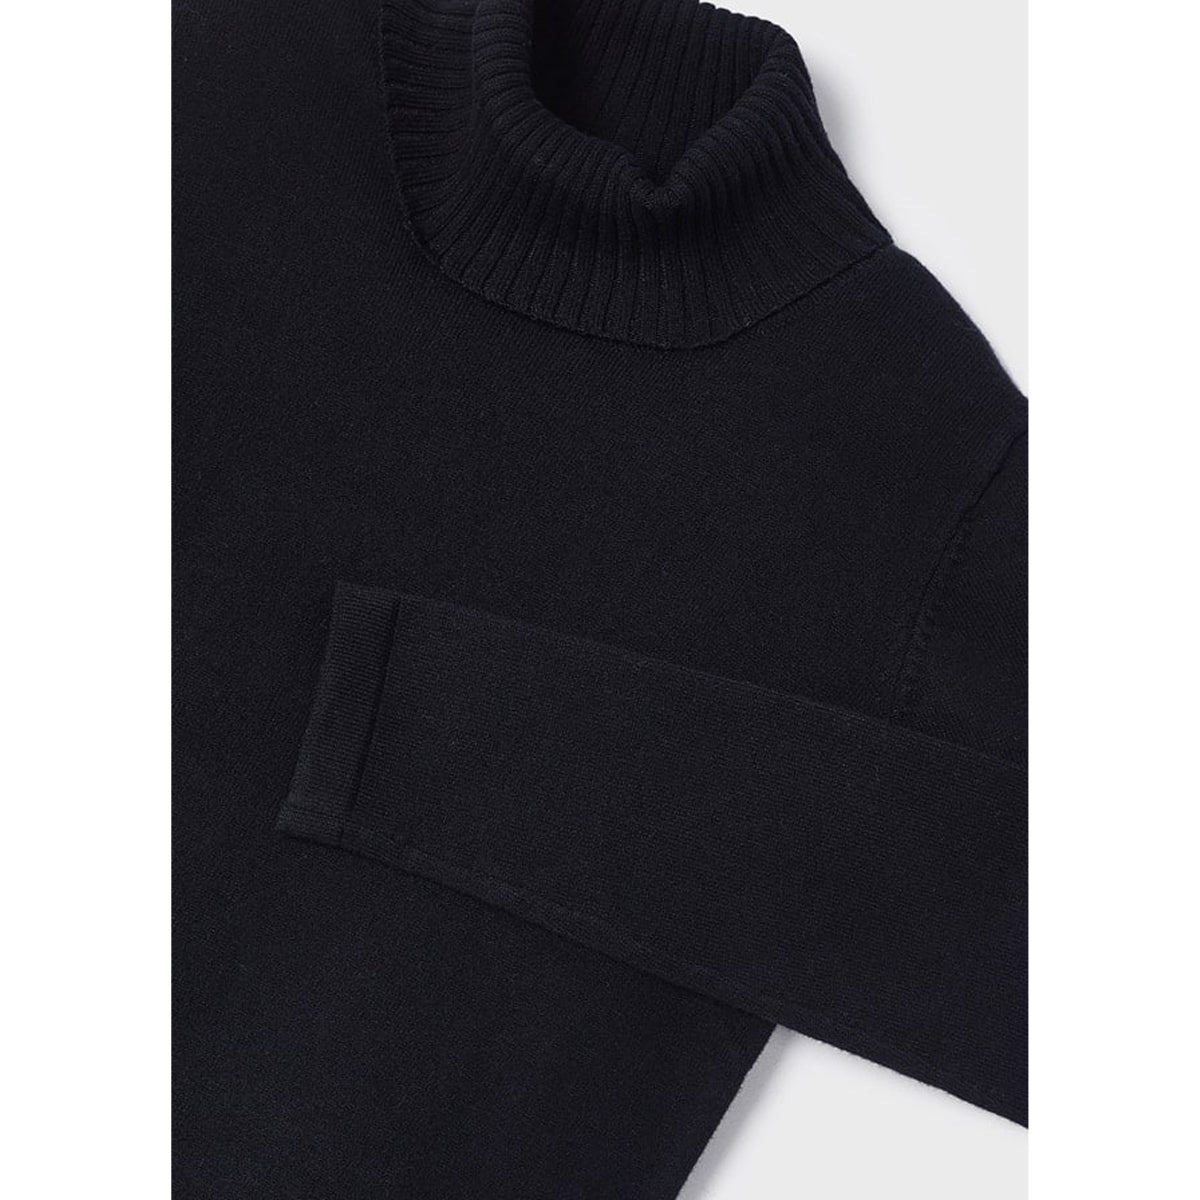 Ecofriends Black Jersey Knit Round Collar Turtleneck Sweater